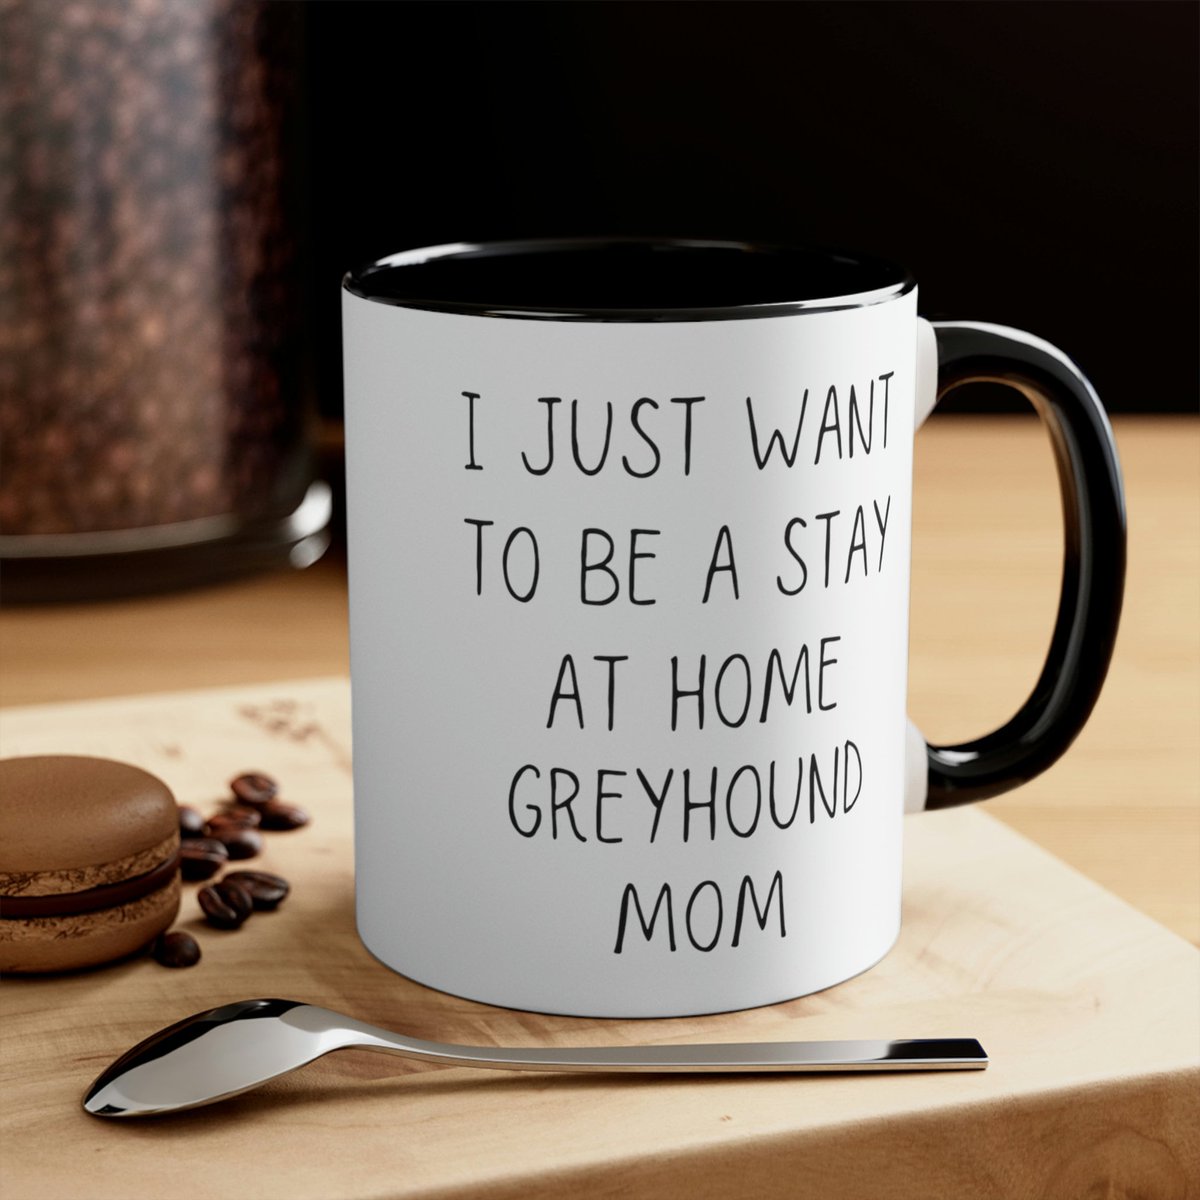 Funny Greyhound Mom Gift Mug #greyhound #greyhounddog #greyhoundgift #greyhoundmothersday #greyhoundmom #greyhoundmug #greyhoundmombirthday CLICK HERE TO BUY NOW: etsy.me/41Mkksa